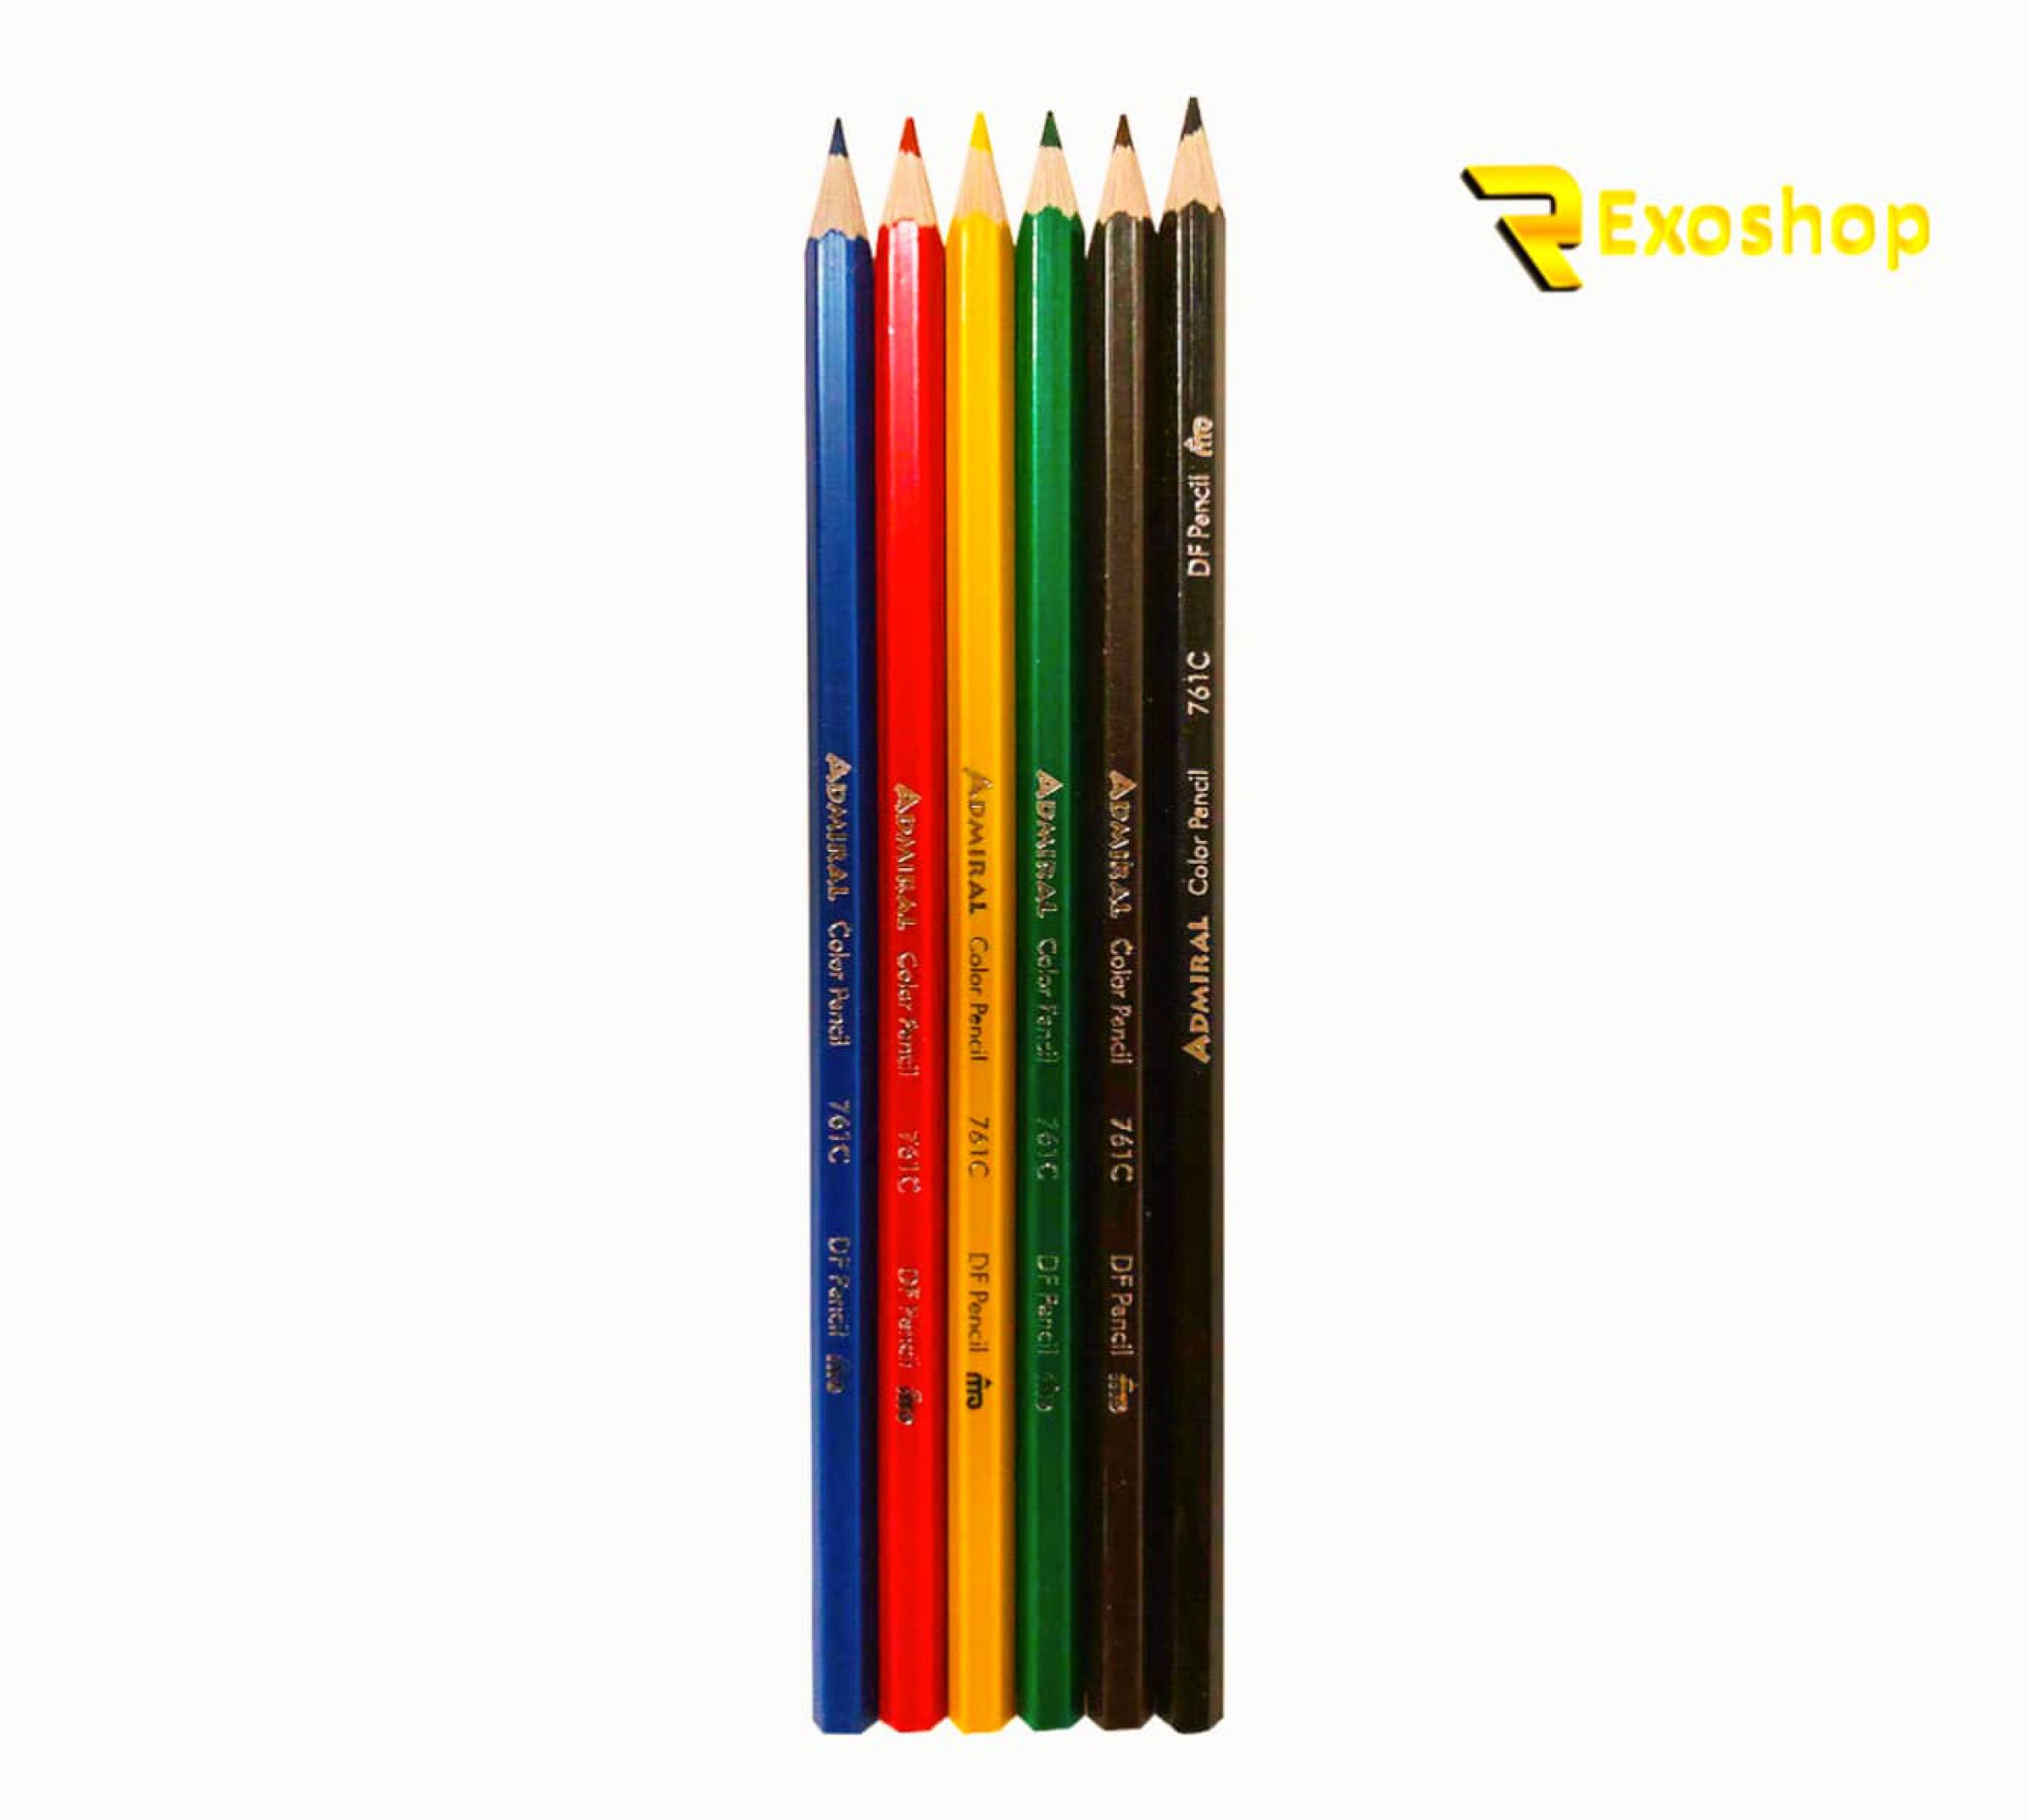  مداد رنگی 6 رنگ ادمیرال یکی از بهترین مداد رنگی ها است که با قیمتی ارزان و کیفیتی مناسب در رکسوشاپ موجود می باشد 